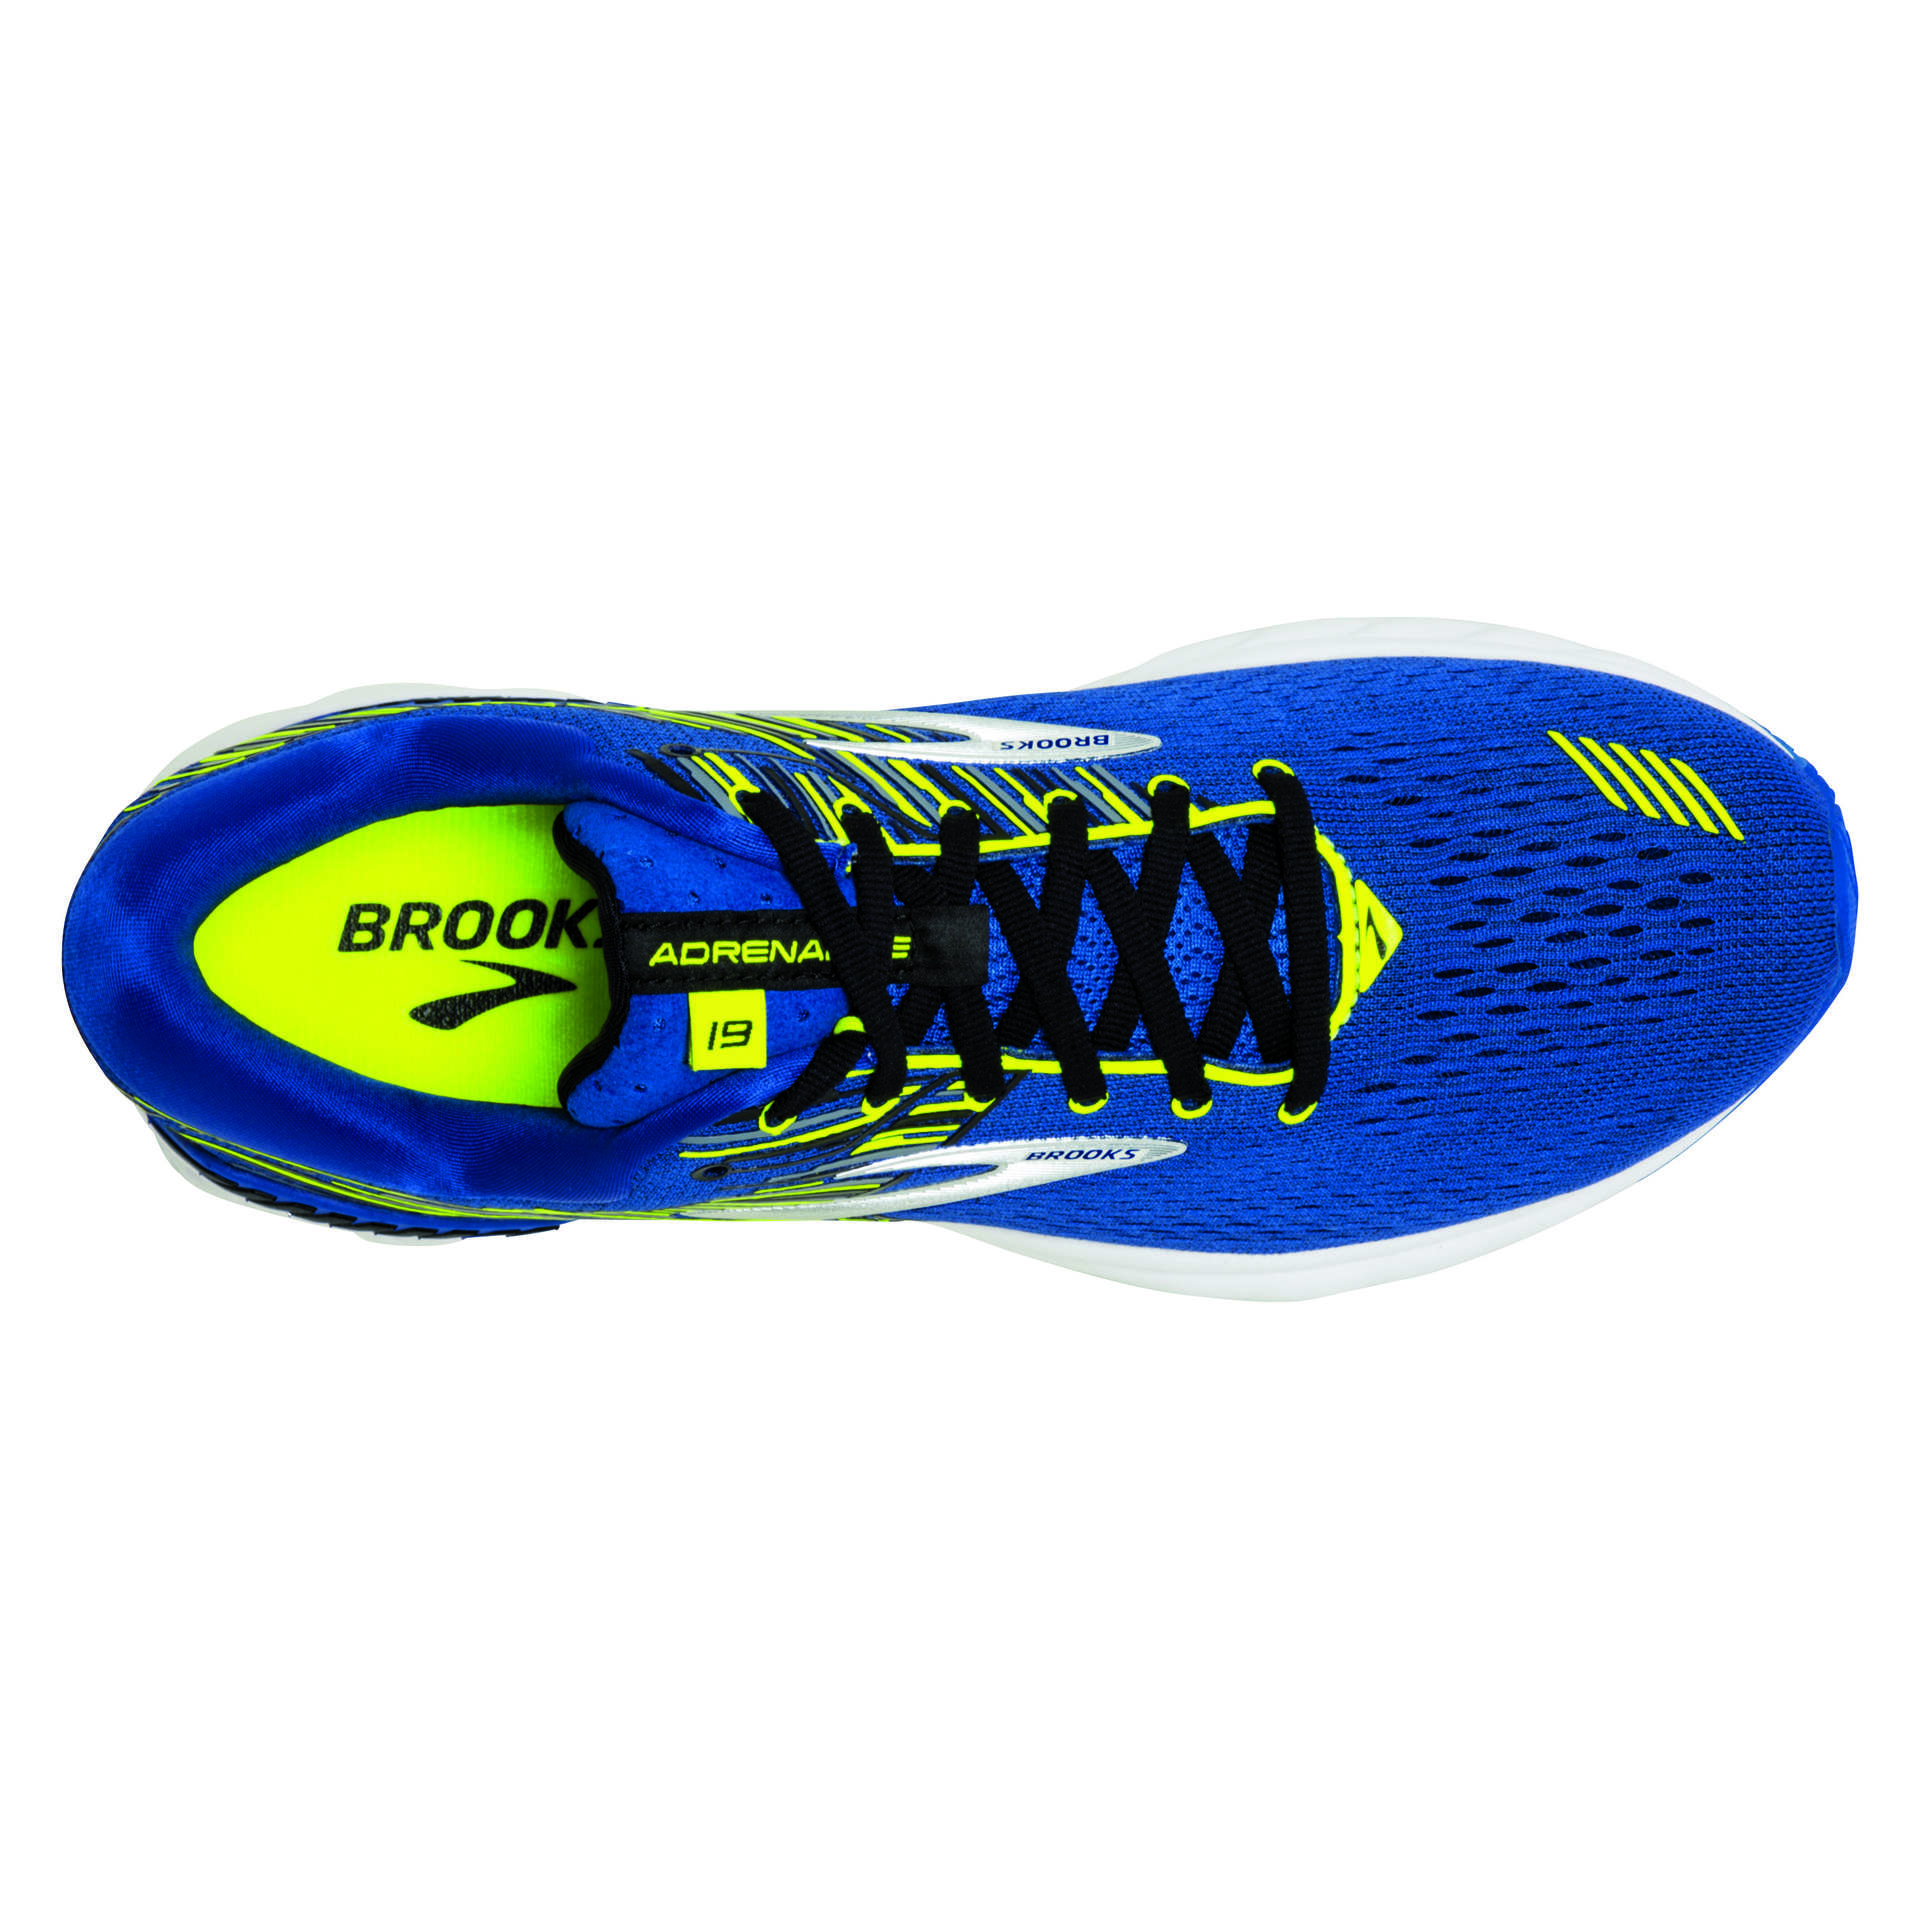 Brooks Adrenaline GTS 19 Hardloopschoenen Blauw/Geel/Wit Heren